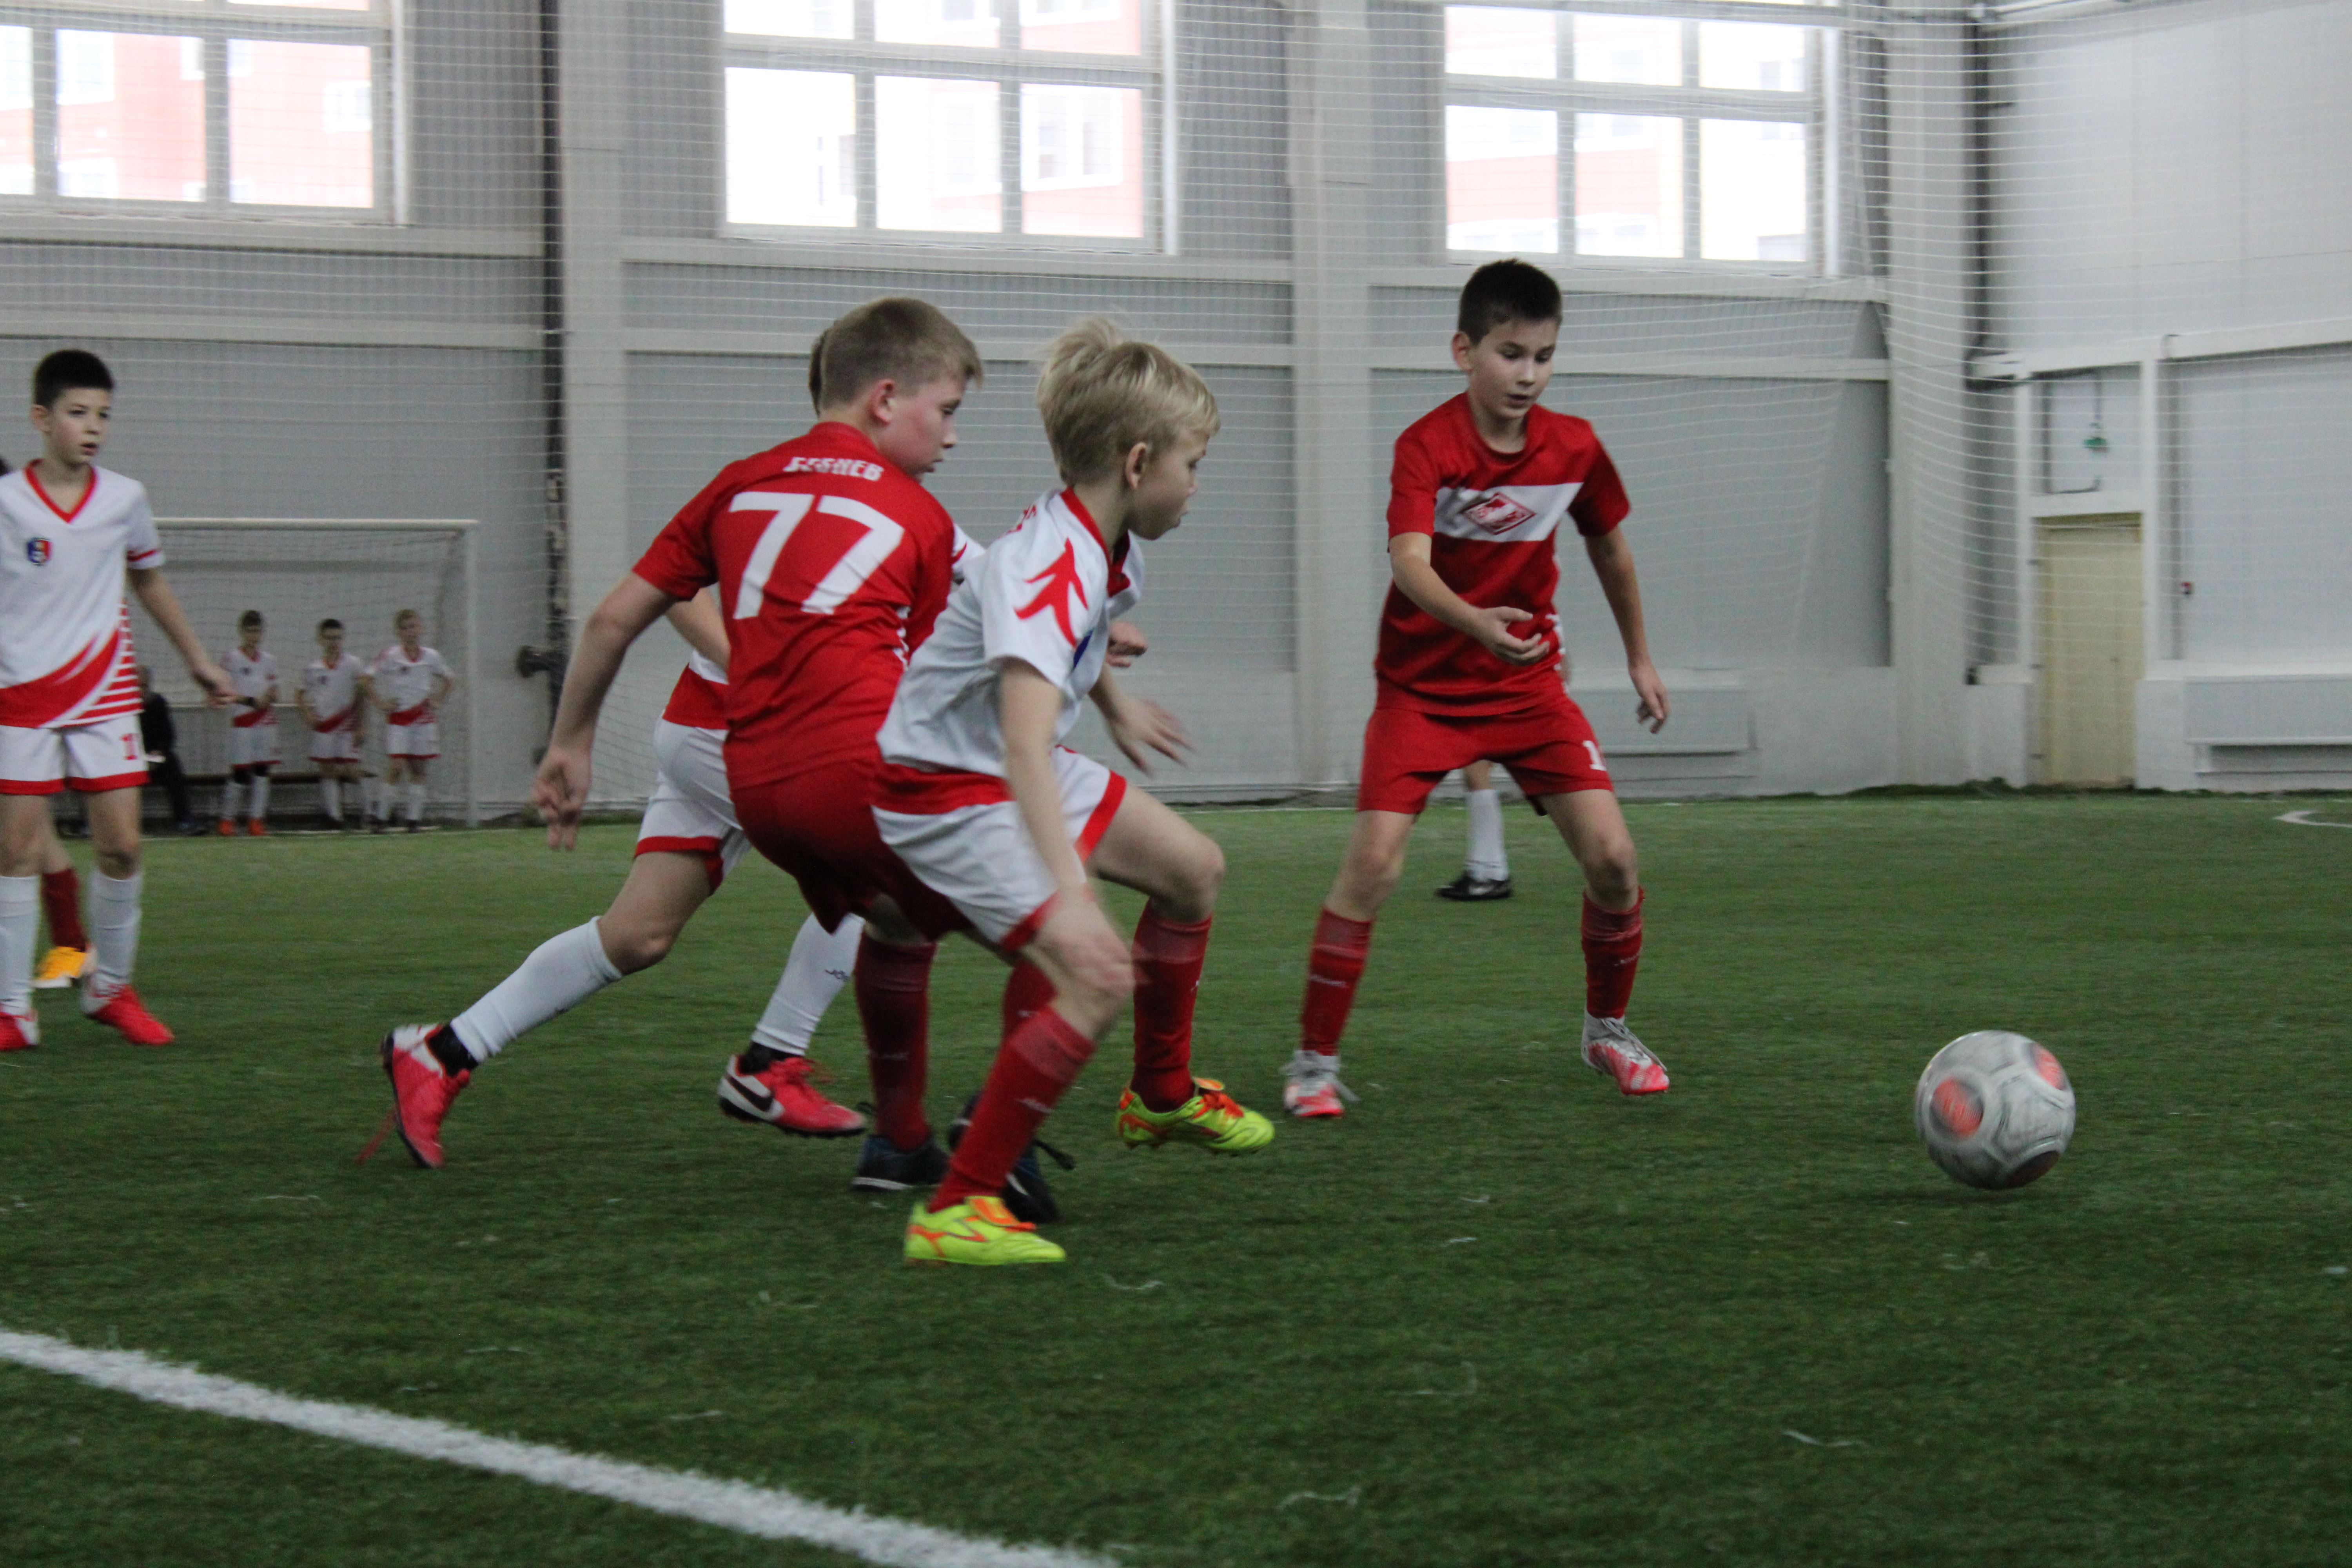 Статус «Детский футбольный центр» присвоен костромской Спортшколе №3 имени Георгия Ярцева